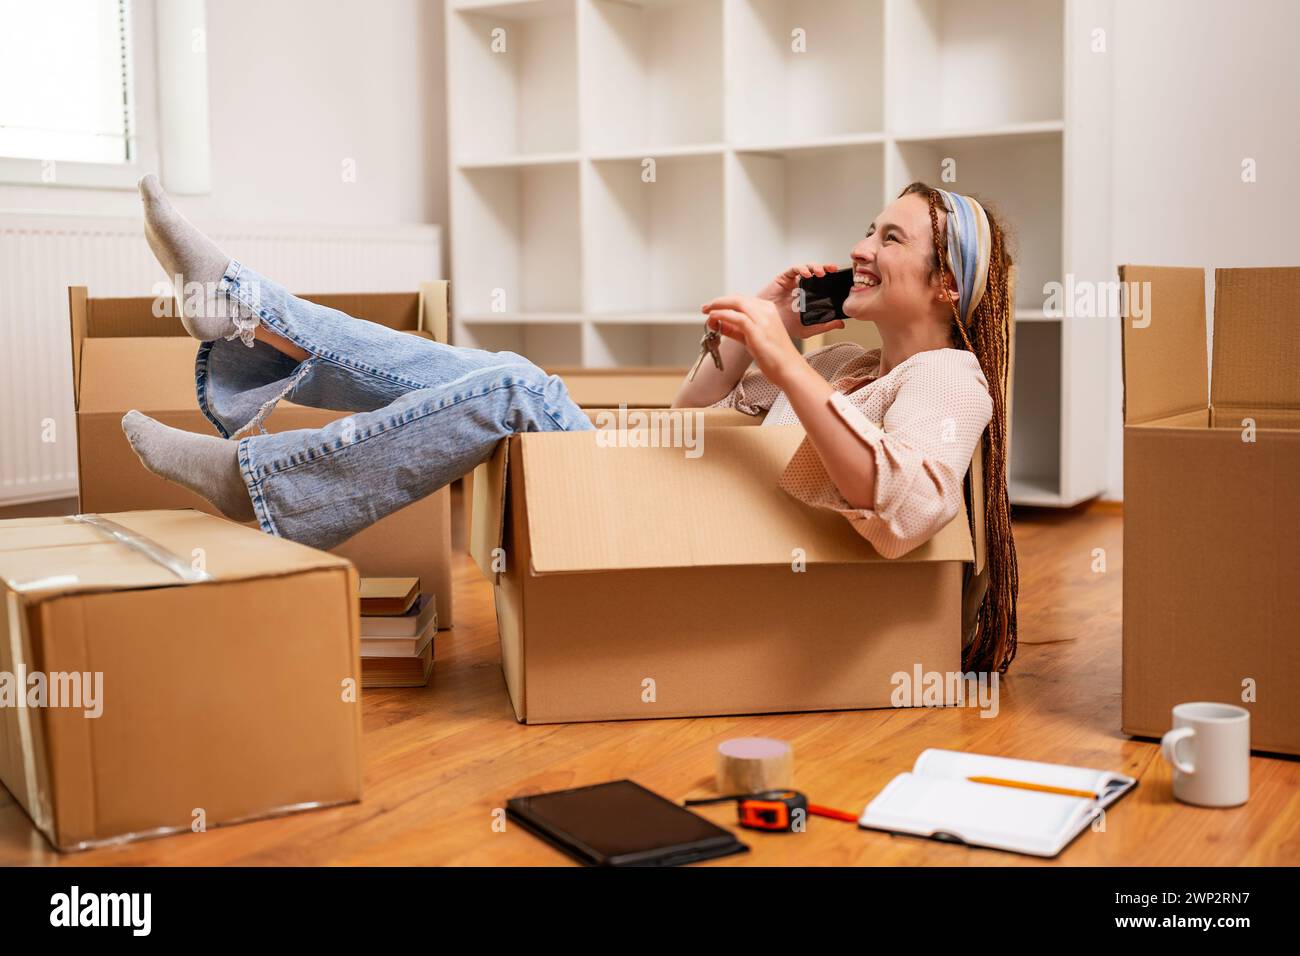 Glückliche Frau, die ein Telefon benutzt und Spaß hat, während sie in eine neue Wohnung zieht. Stockfoto